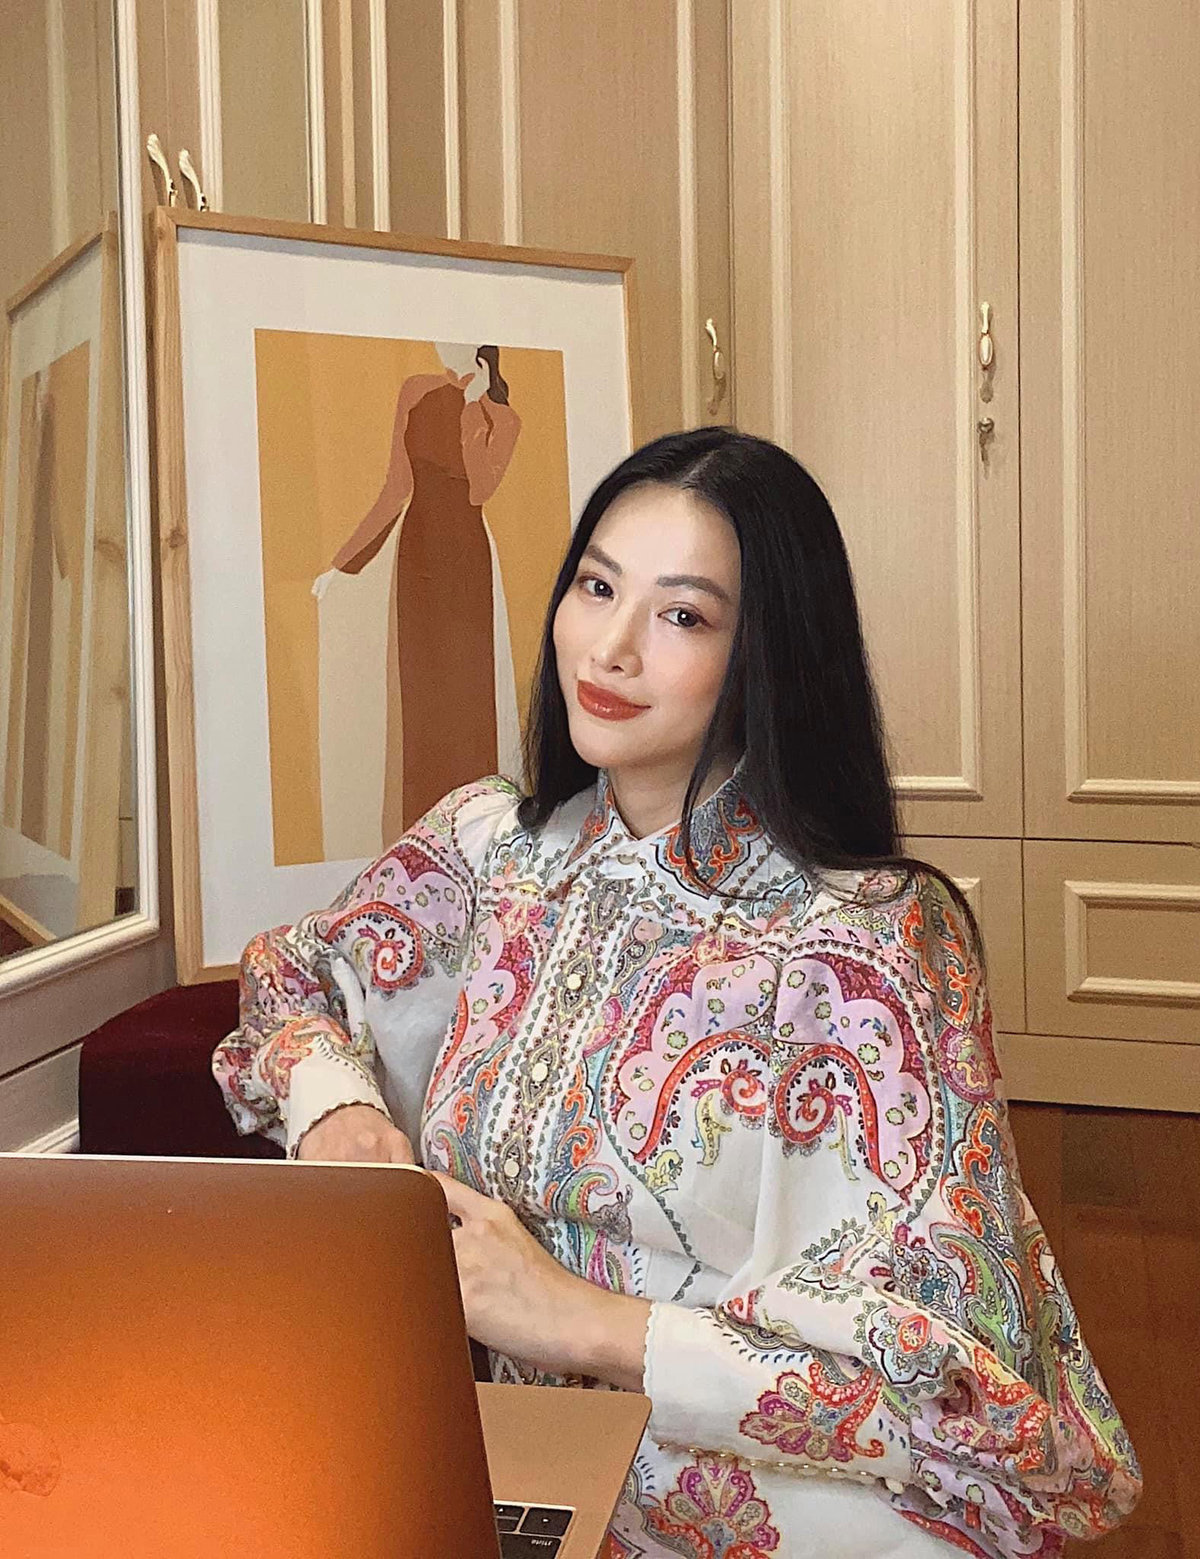 Khi làm việc và họp online, Phương Khánh ưu tiên chọn các kiểu sơ mi lụa với họa tiết nhiều màu sắc để trông tươi tắn hơn nhưng vẫn phải đảm bảo sự nhẹ nhàng, thanh lịch.